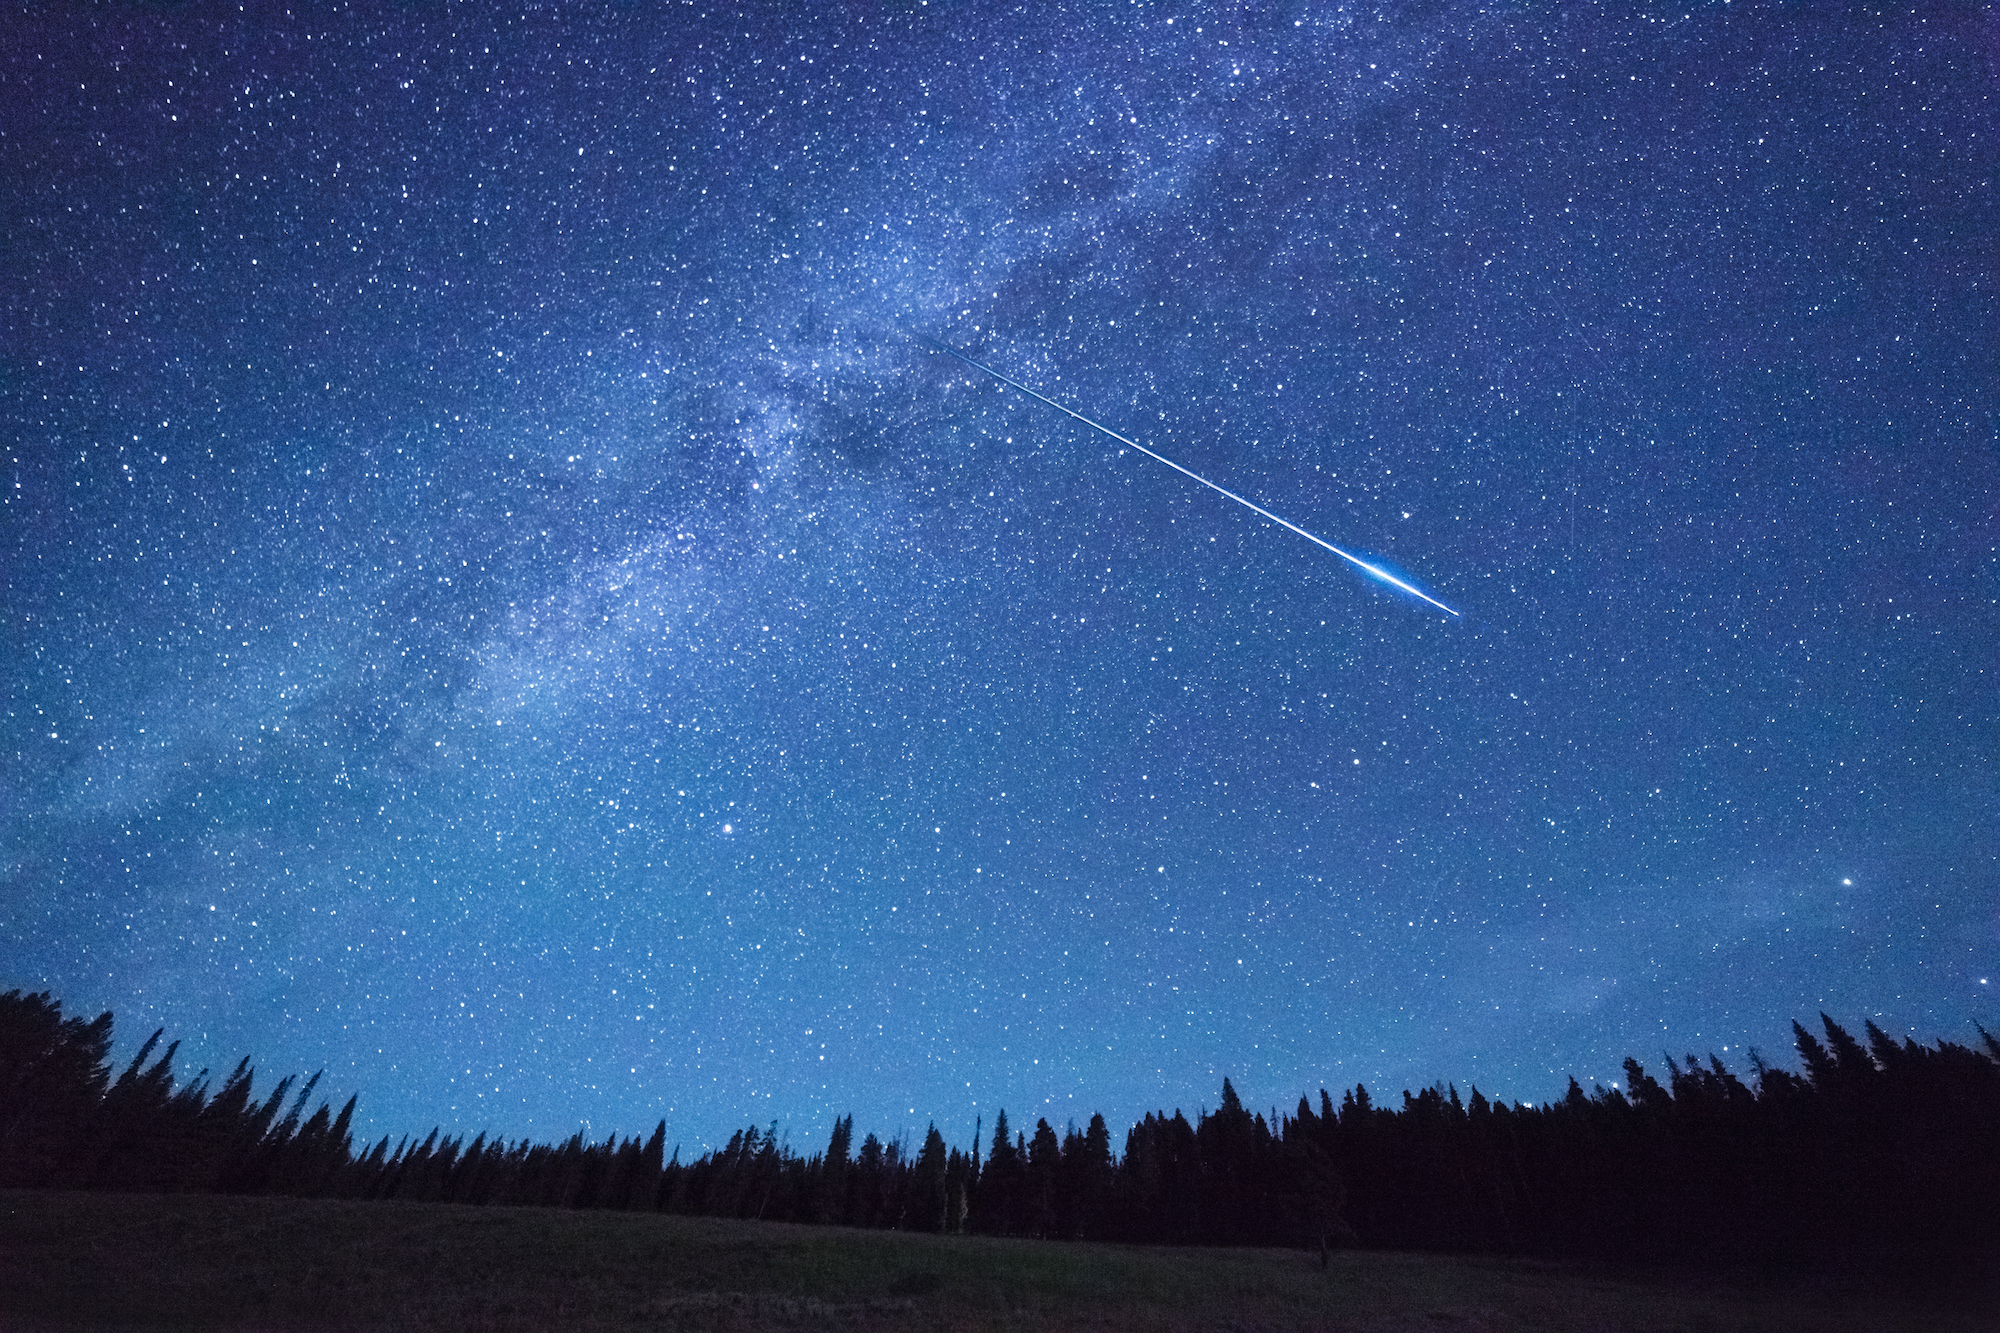 meteor streaks across a night sky